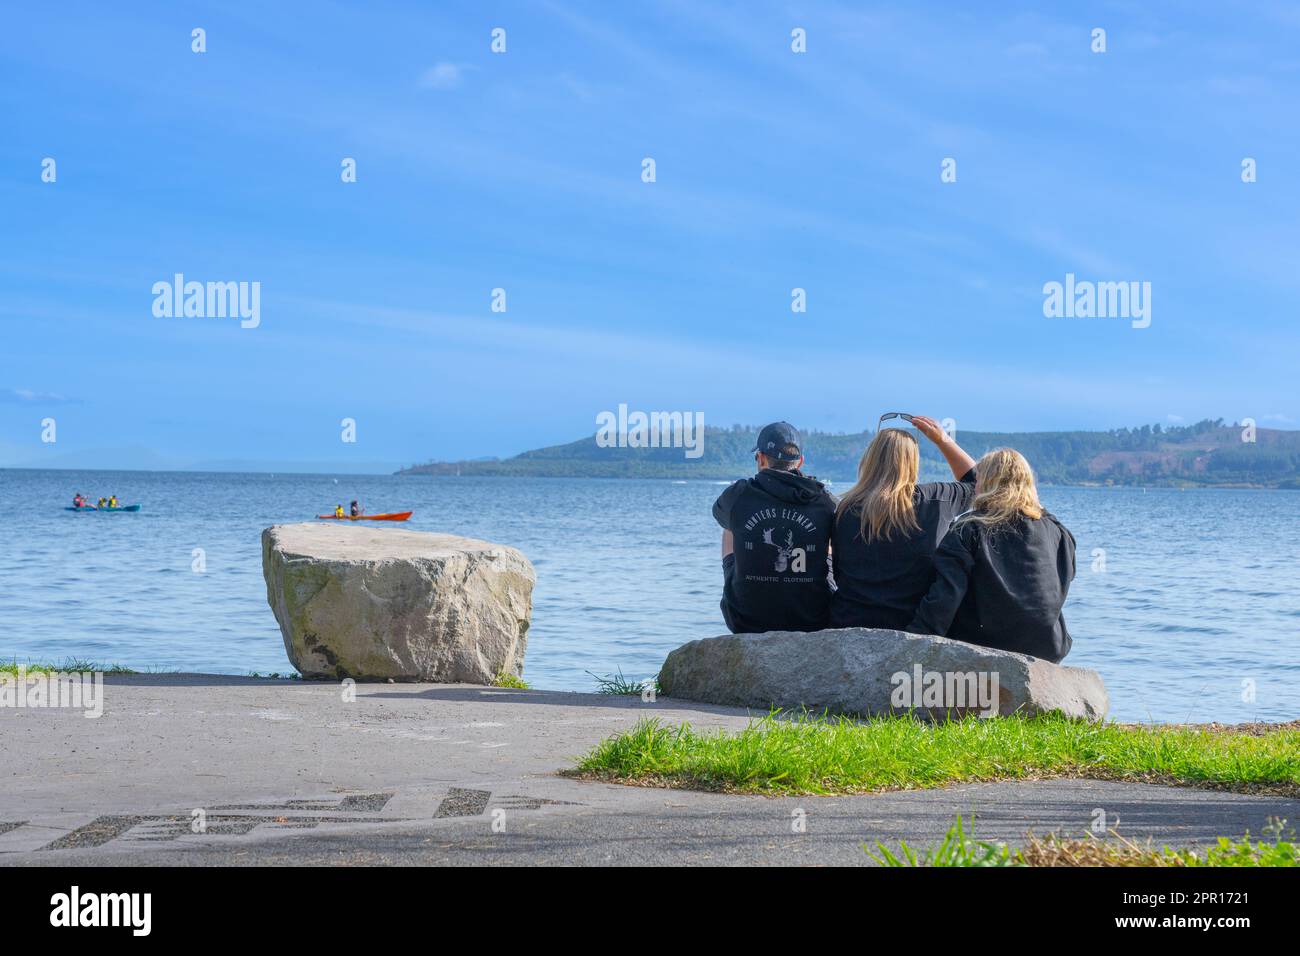 Taupo Nueva Zelanda - 16 2023 de abril; tres adultos jóvenes sentados junto al lago mirando a la vista. Foto de stock